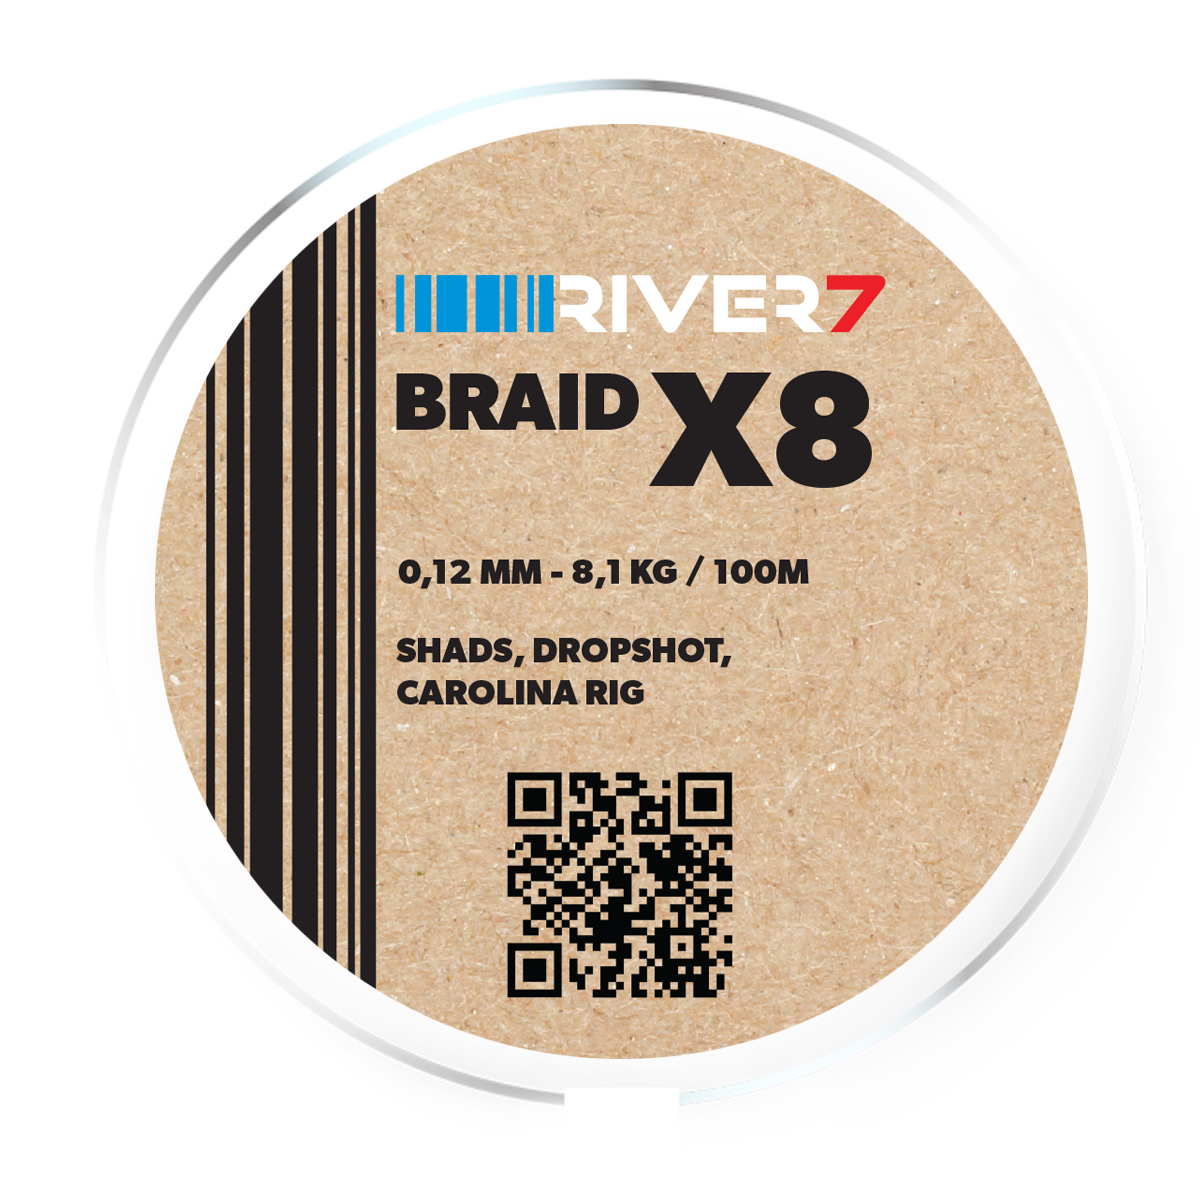 River7 X8 Braid -  0.12 mm